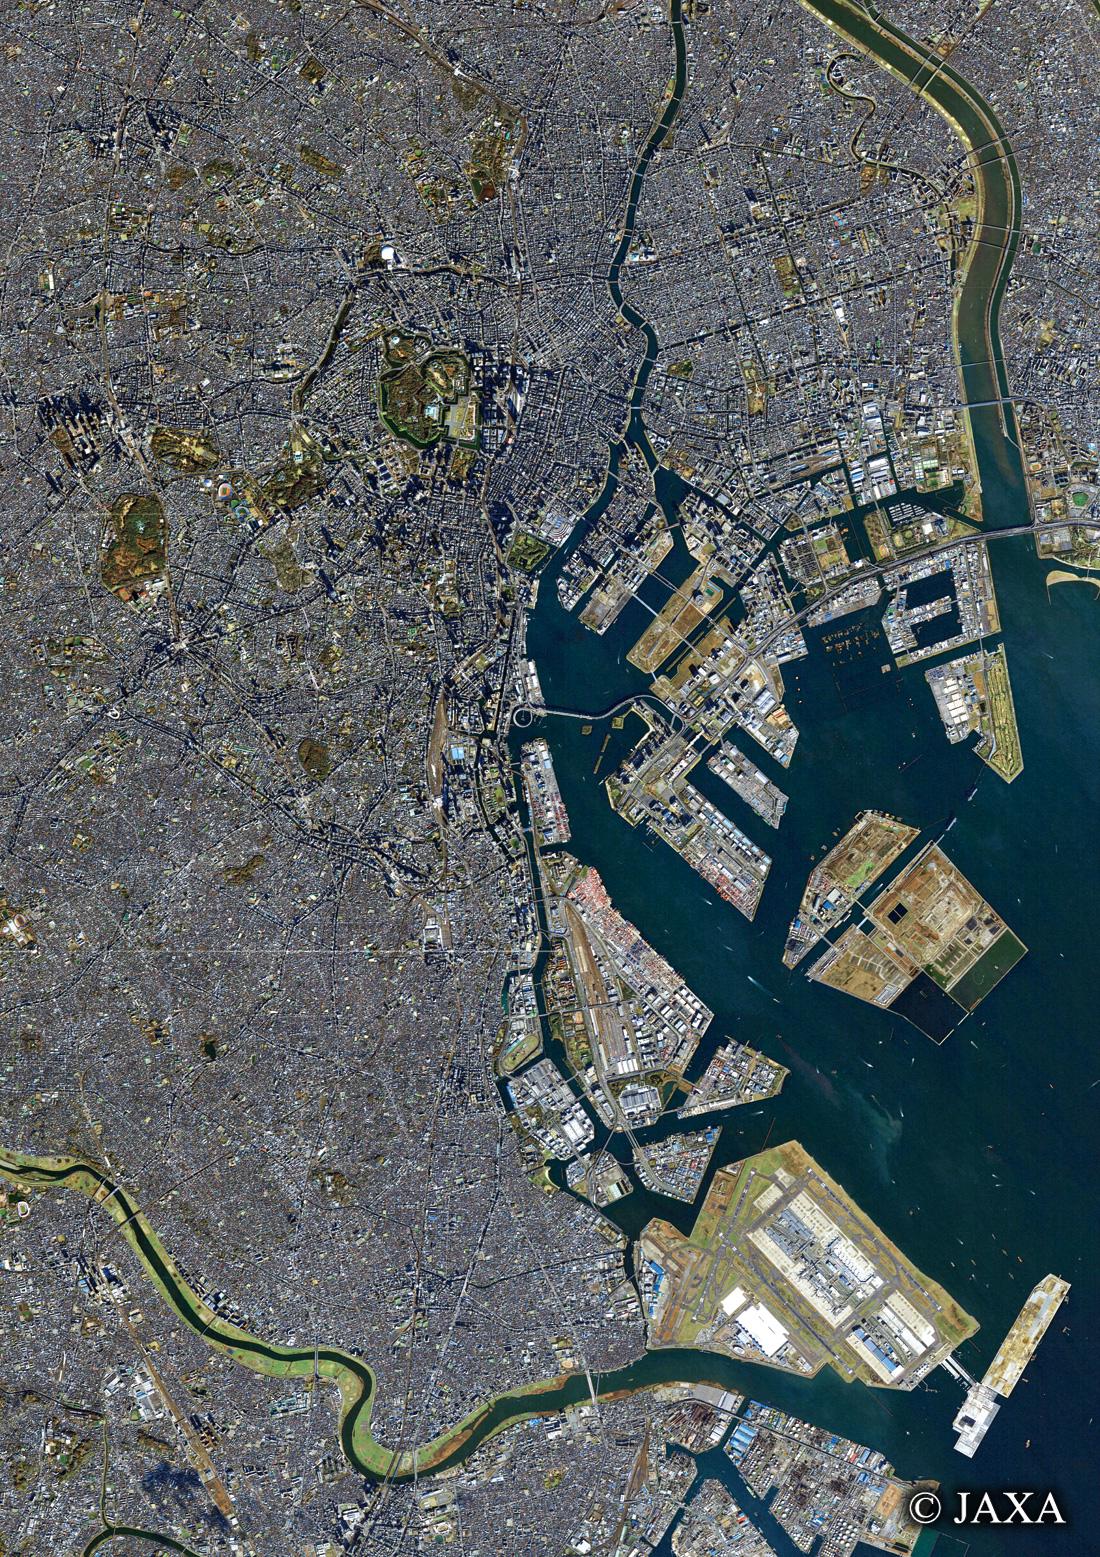 だいちから見た日本の都市 東京都心:衛星画像